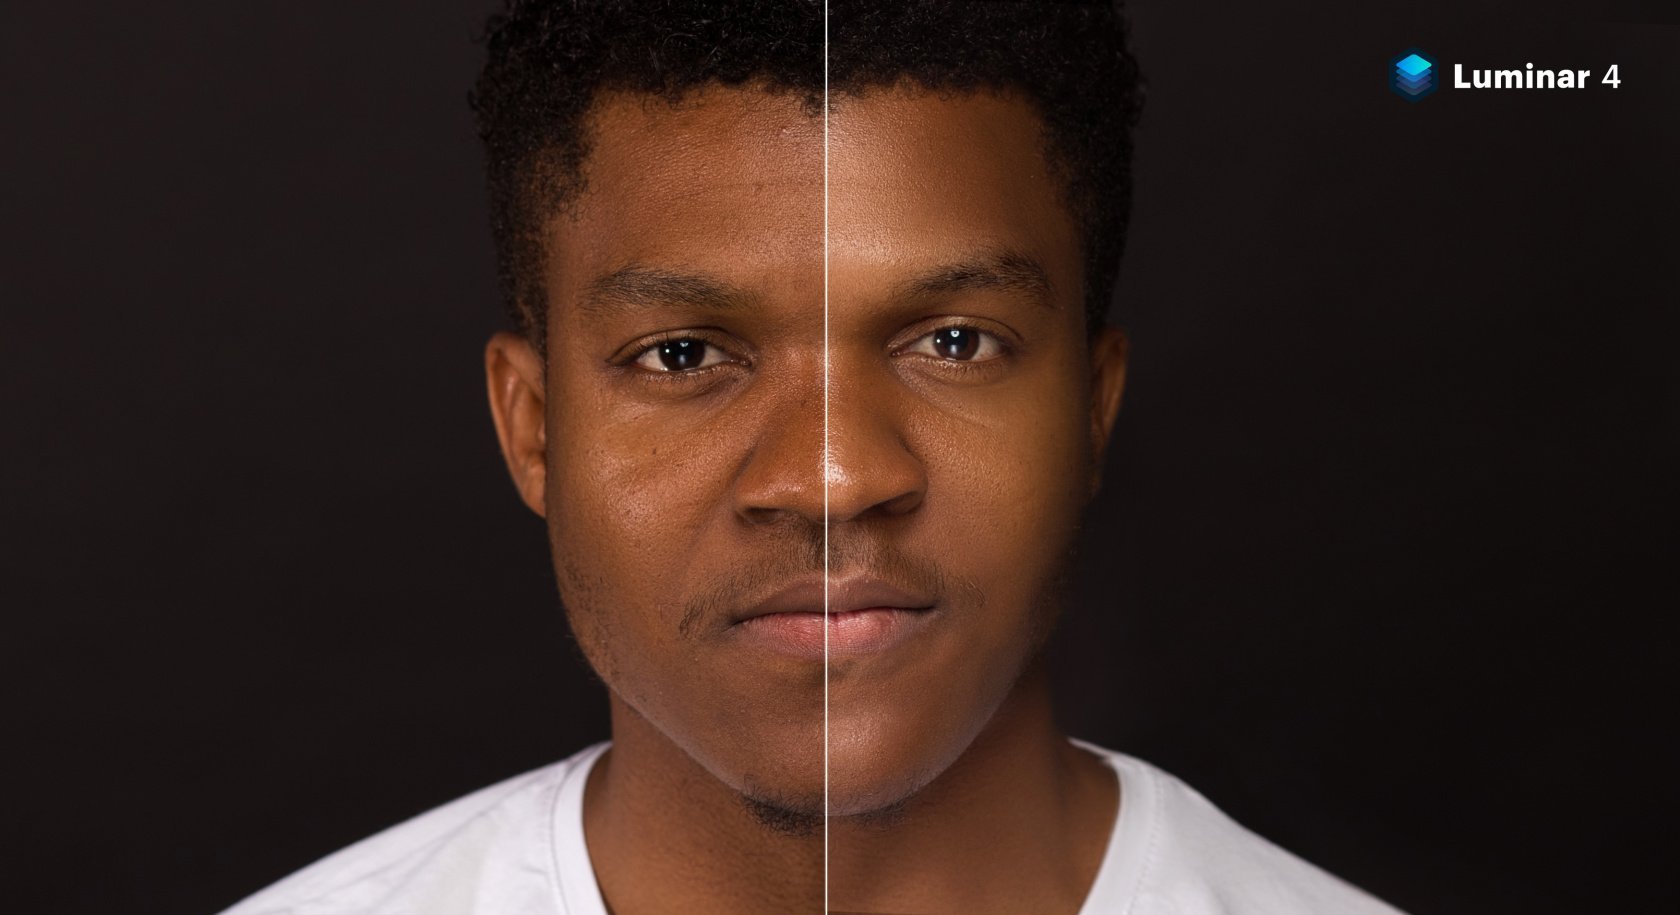 Faites briller vos portraits avec les nouveaux outils de Luminar 4 Image3